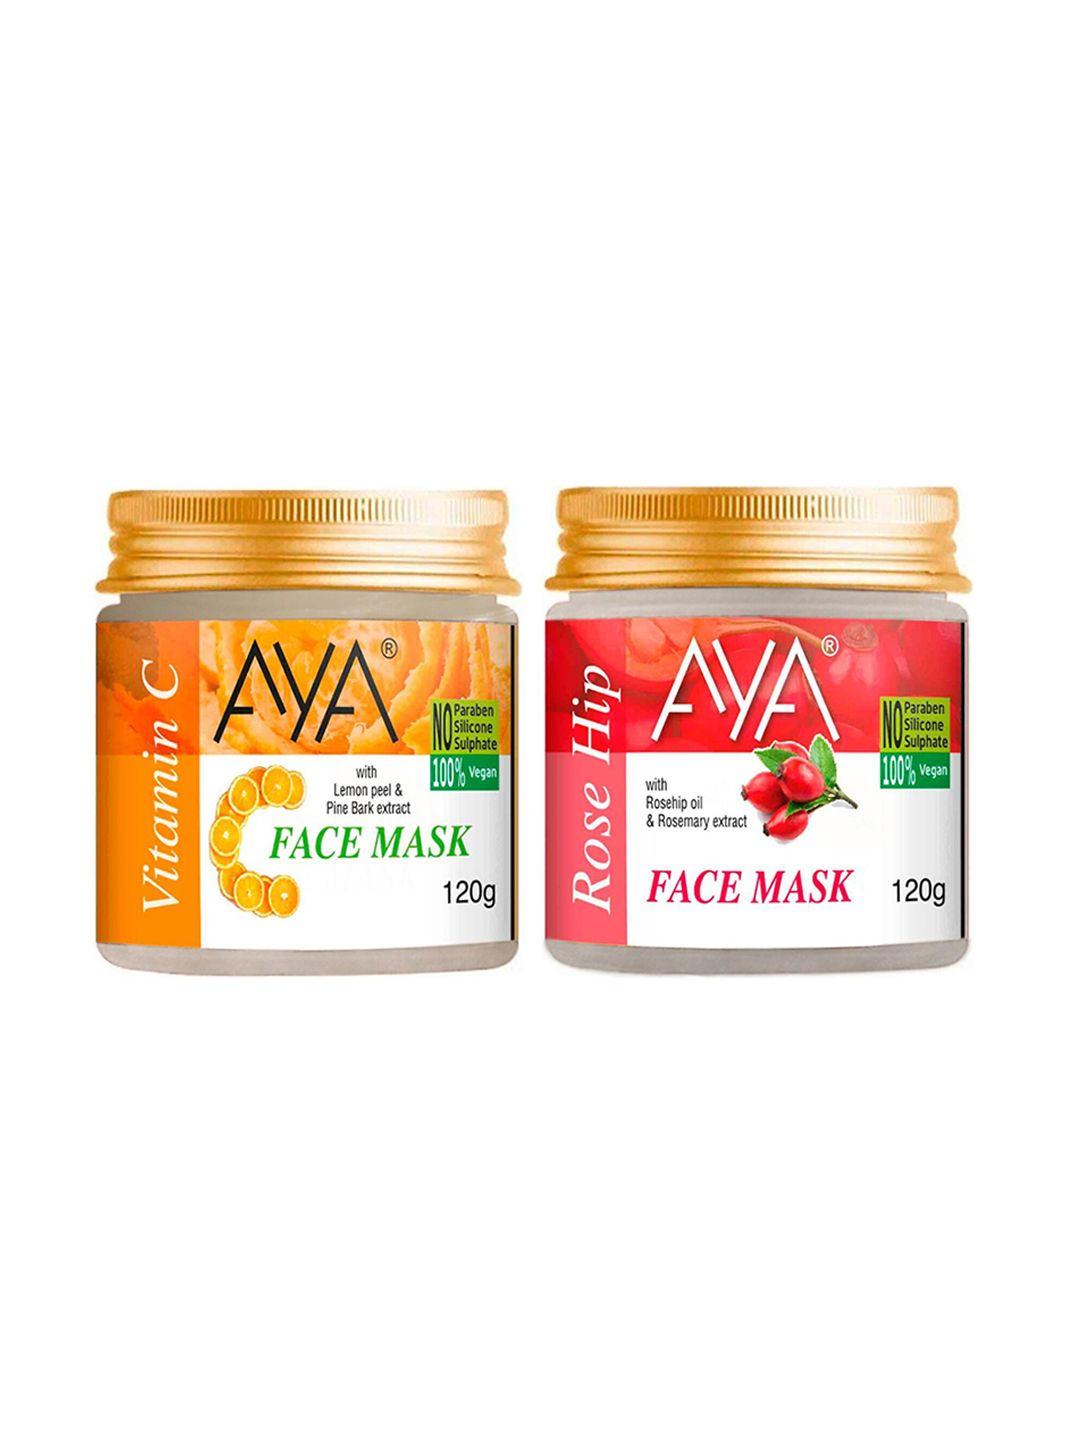 aya set of 2 paraben free face masks - vitamin c & rose hip - 120g each